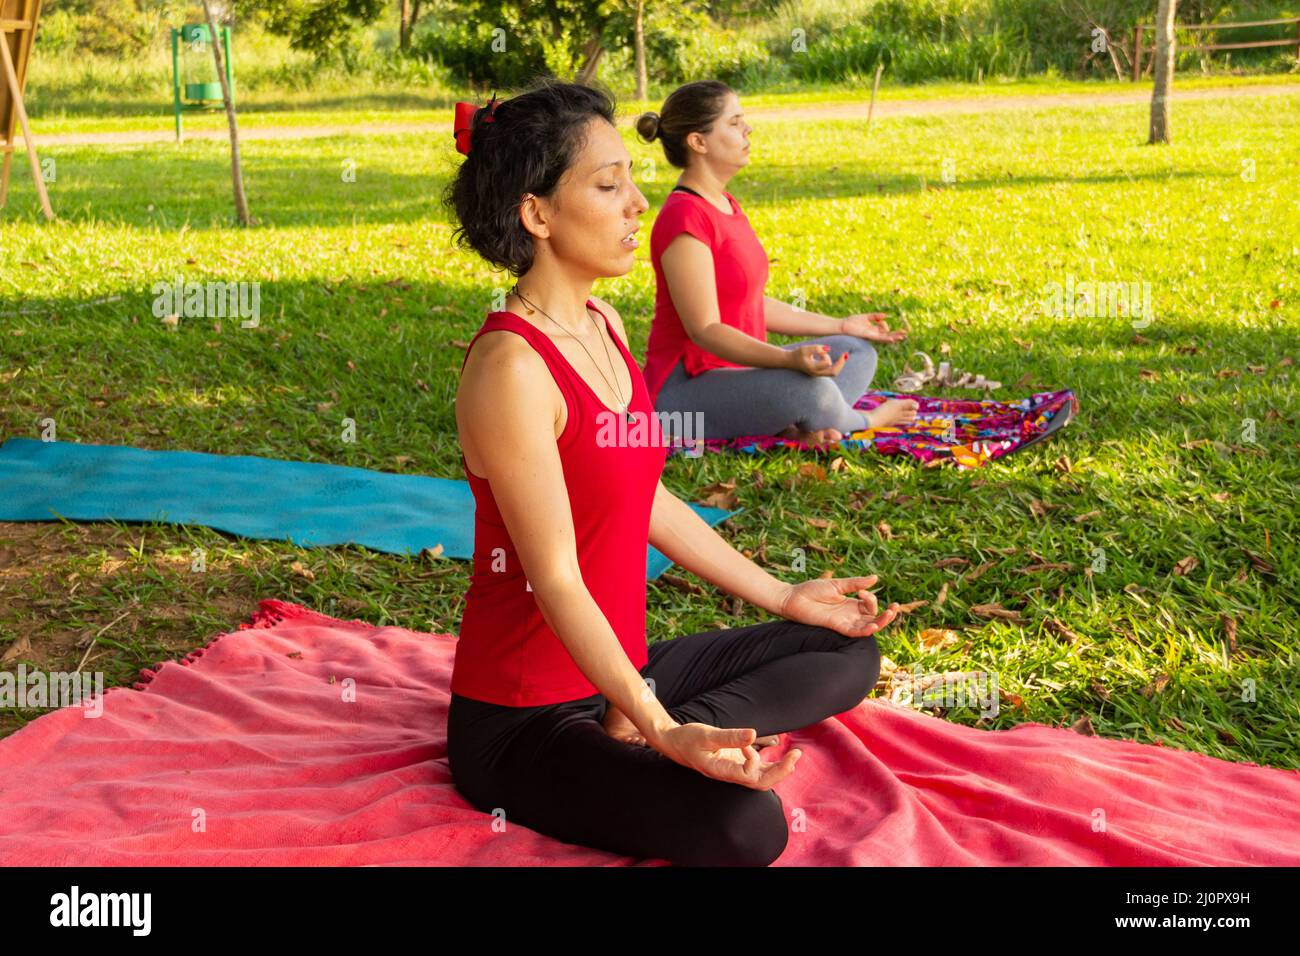 Goias, Brésil – 11 mars 2022 : cours de yoga dans un parc public de la ville. Deux personnes pratiquant le yoga dans un parc herbacé bordé d'arbres. Banque D'Images